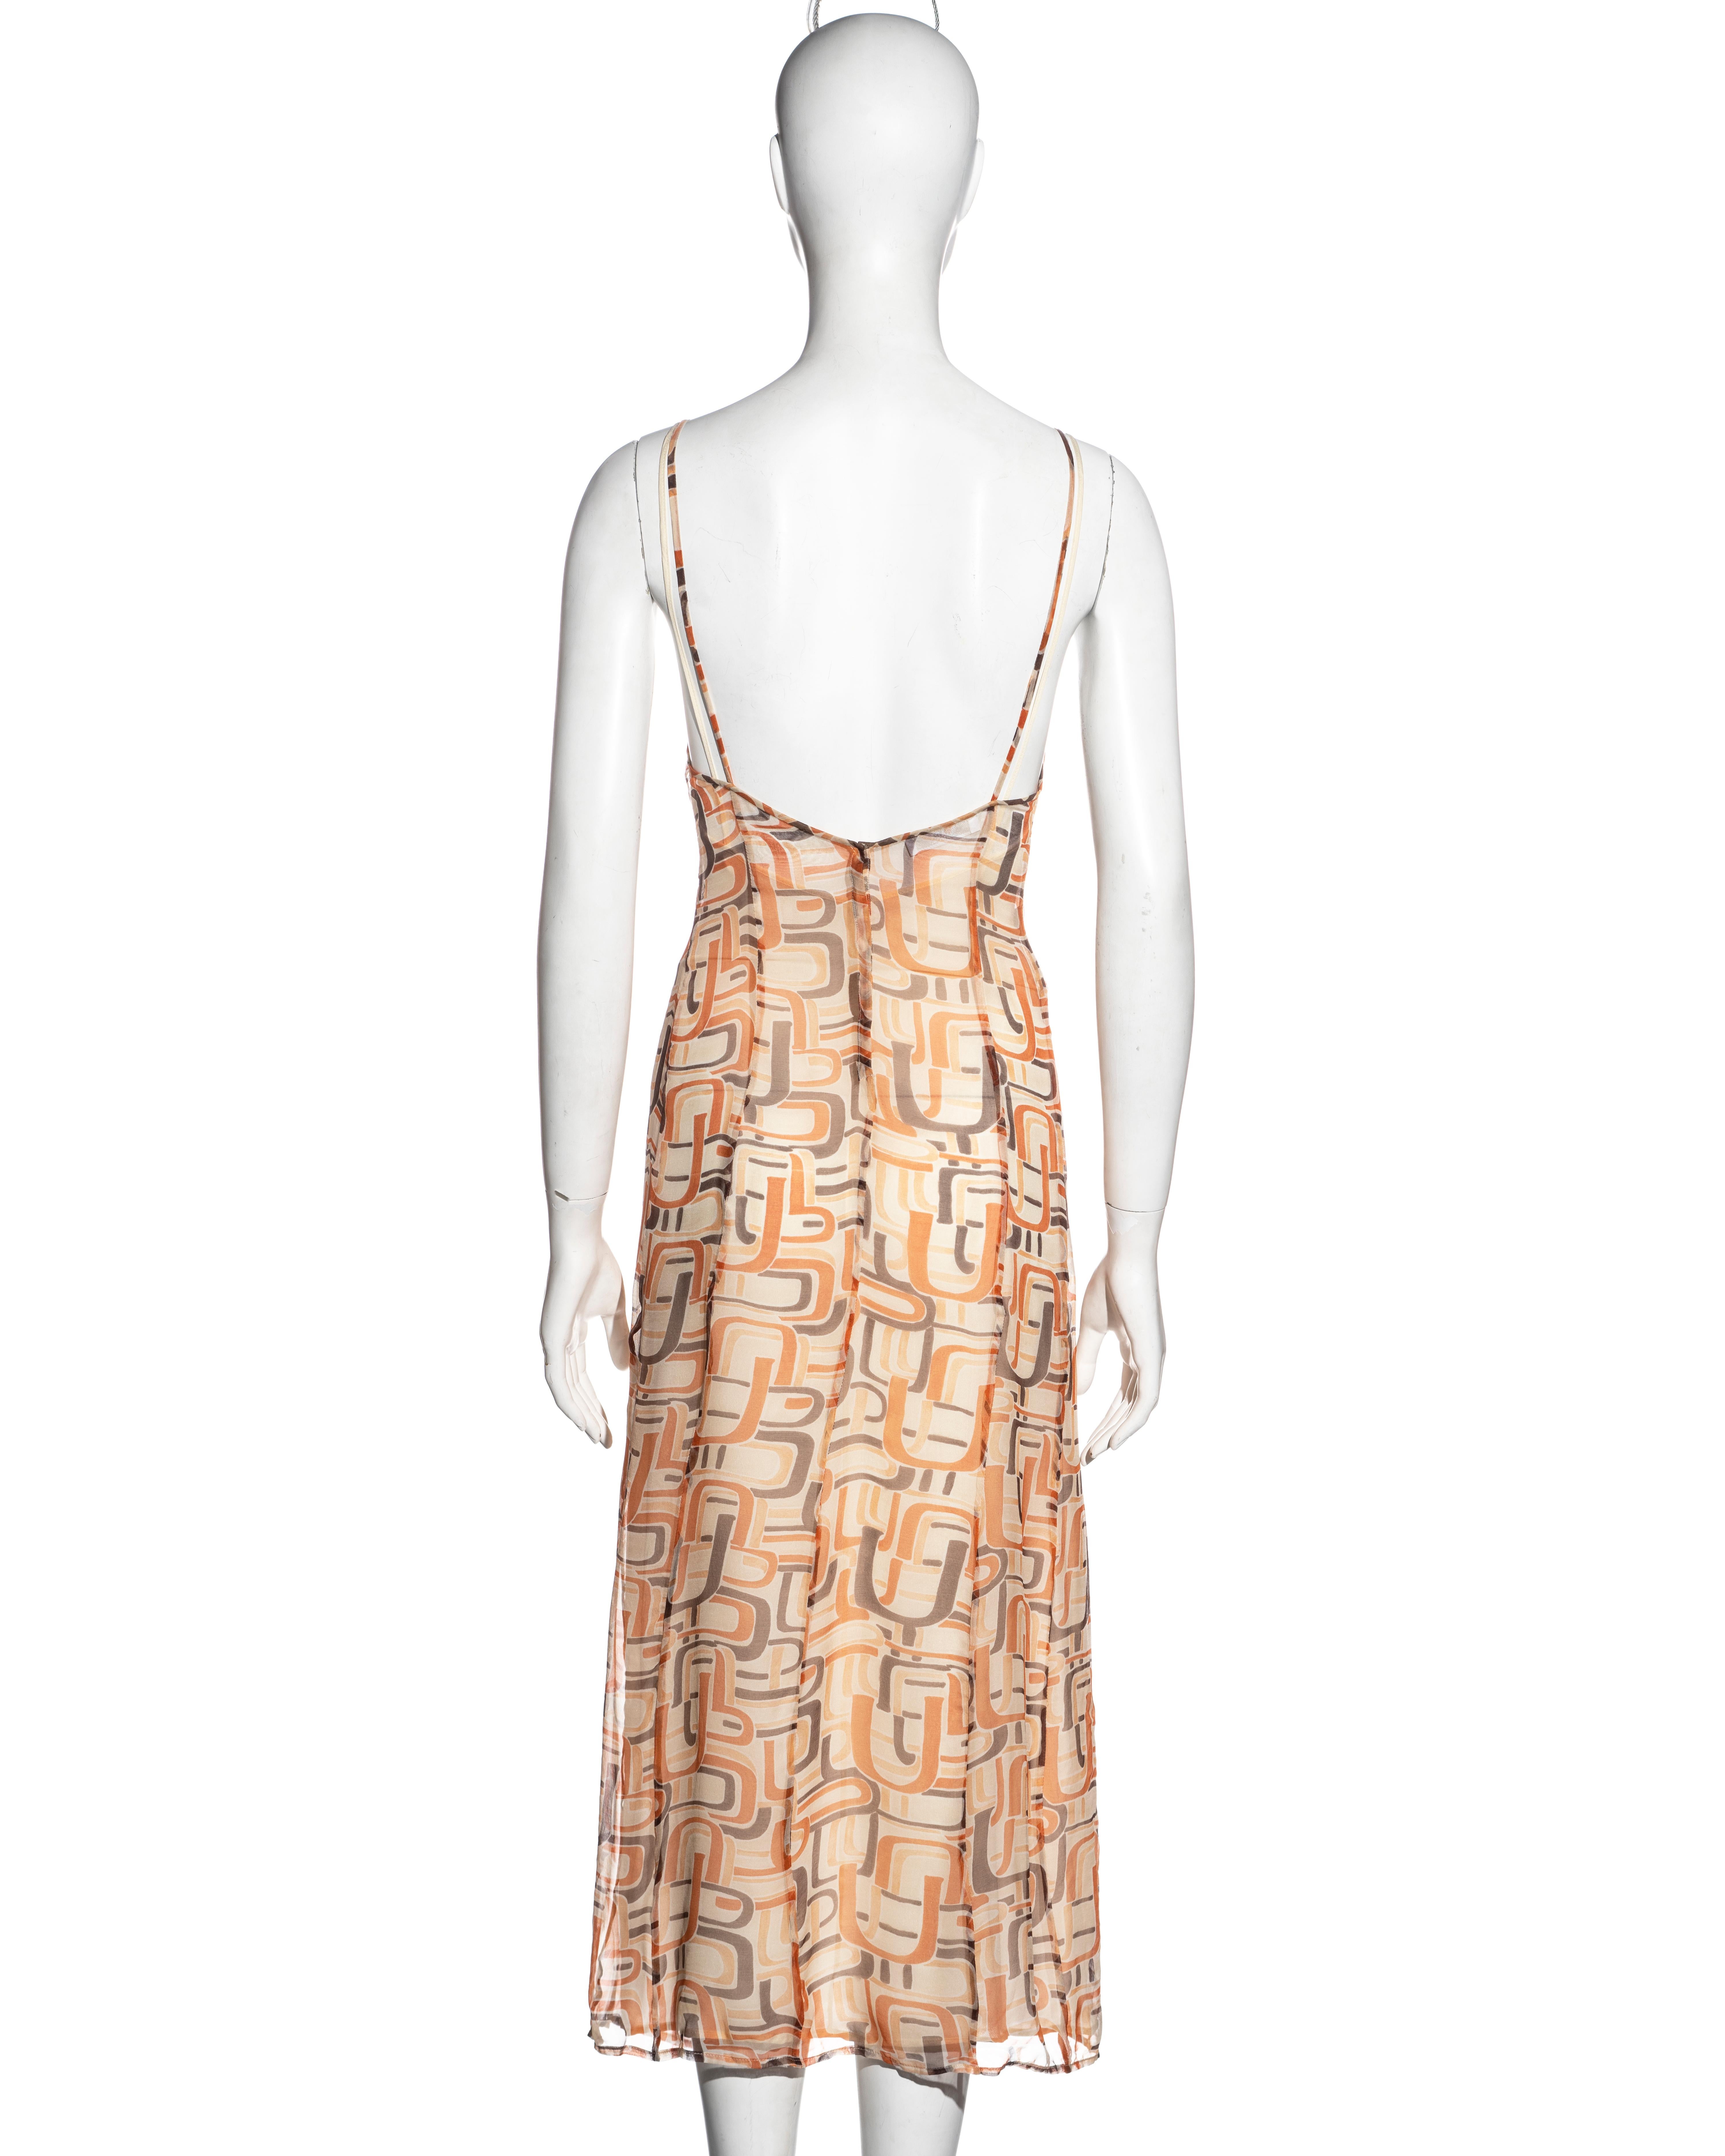 Prada by Miuccia Prada orange silk chiffon slip dress, fw 1996 For Sale 1